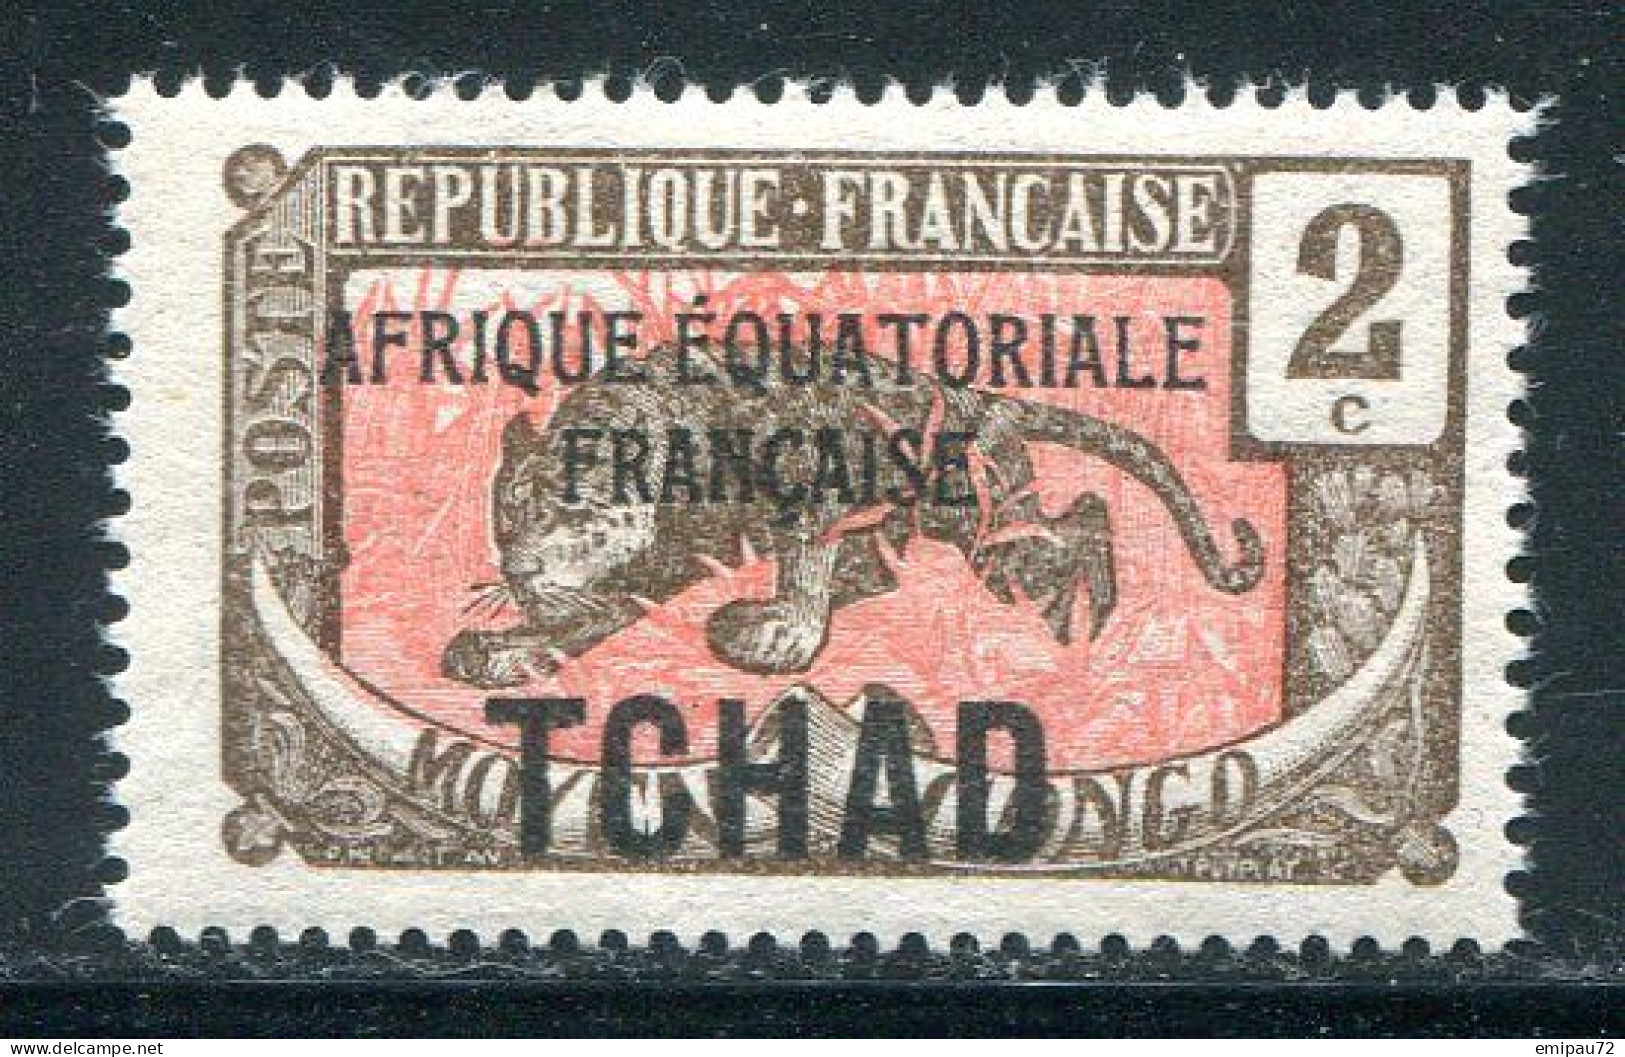 TCHAD- Y&T N°20- Neuf Sans Charnière ** - Unused Stamps